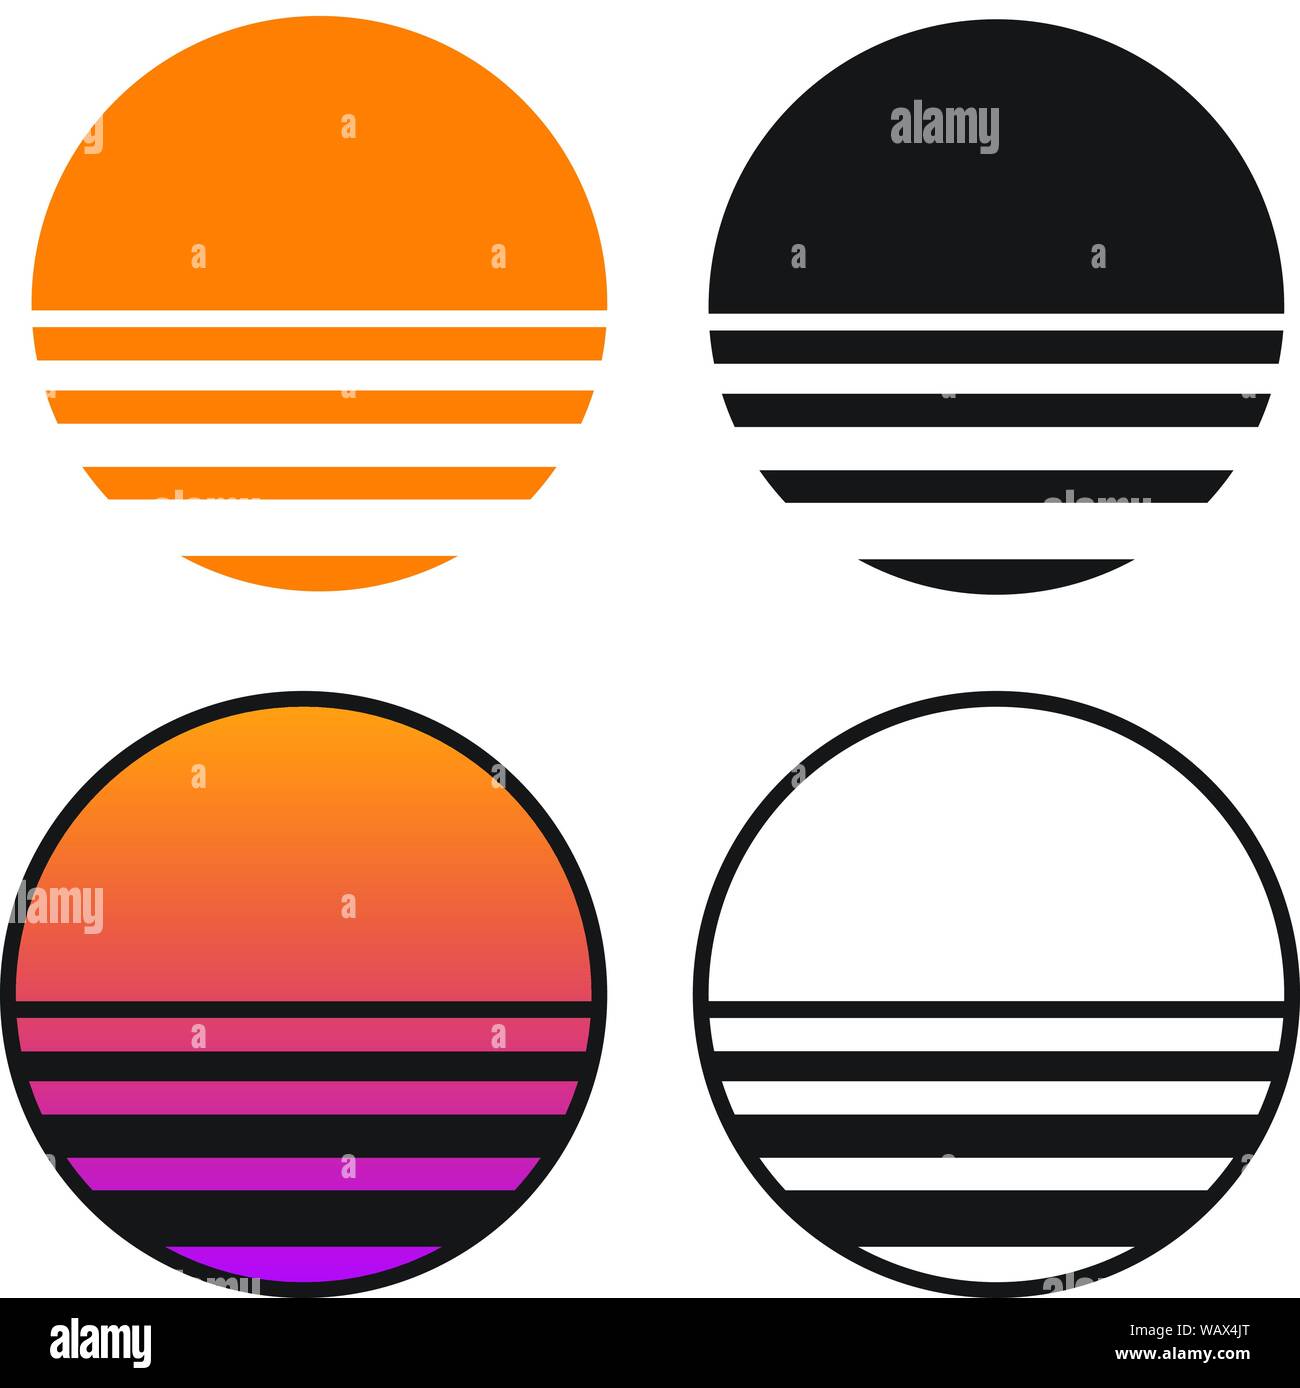 Coucher de soleil rétro classique d'illustration vectorielle isolés en couleur unie, un dégradé de couleur, et les versions noir et blanc Illustration de Vecteur